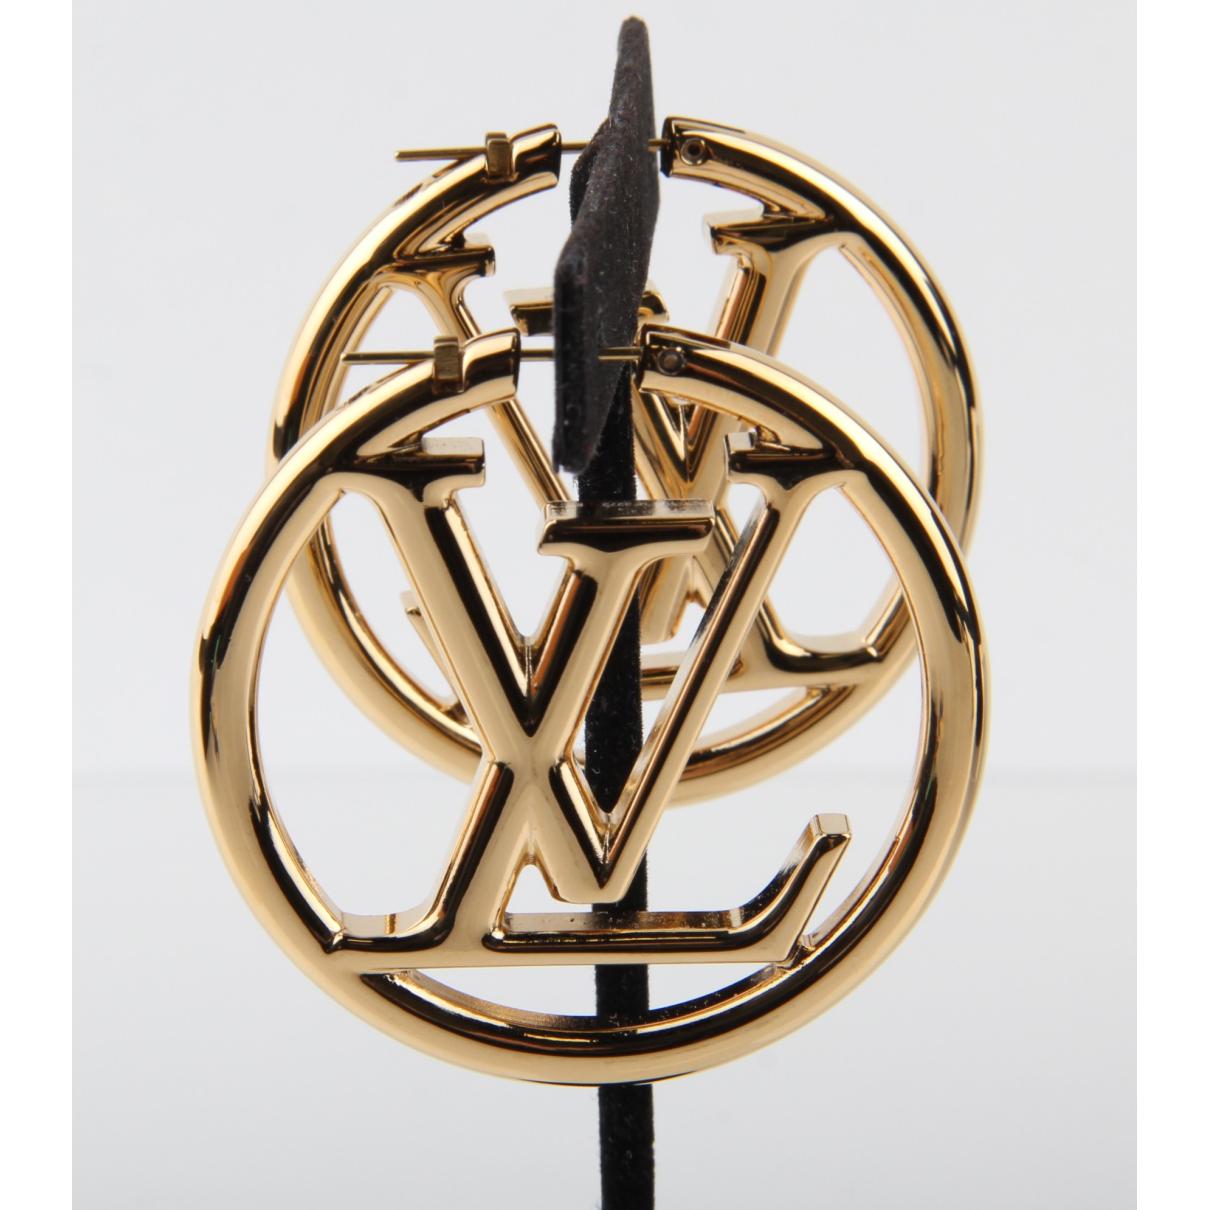 Louise earrings Louis Vuitton Gold in Metal - 32048212